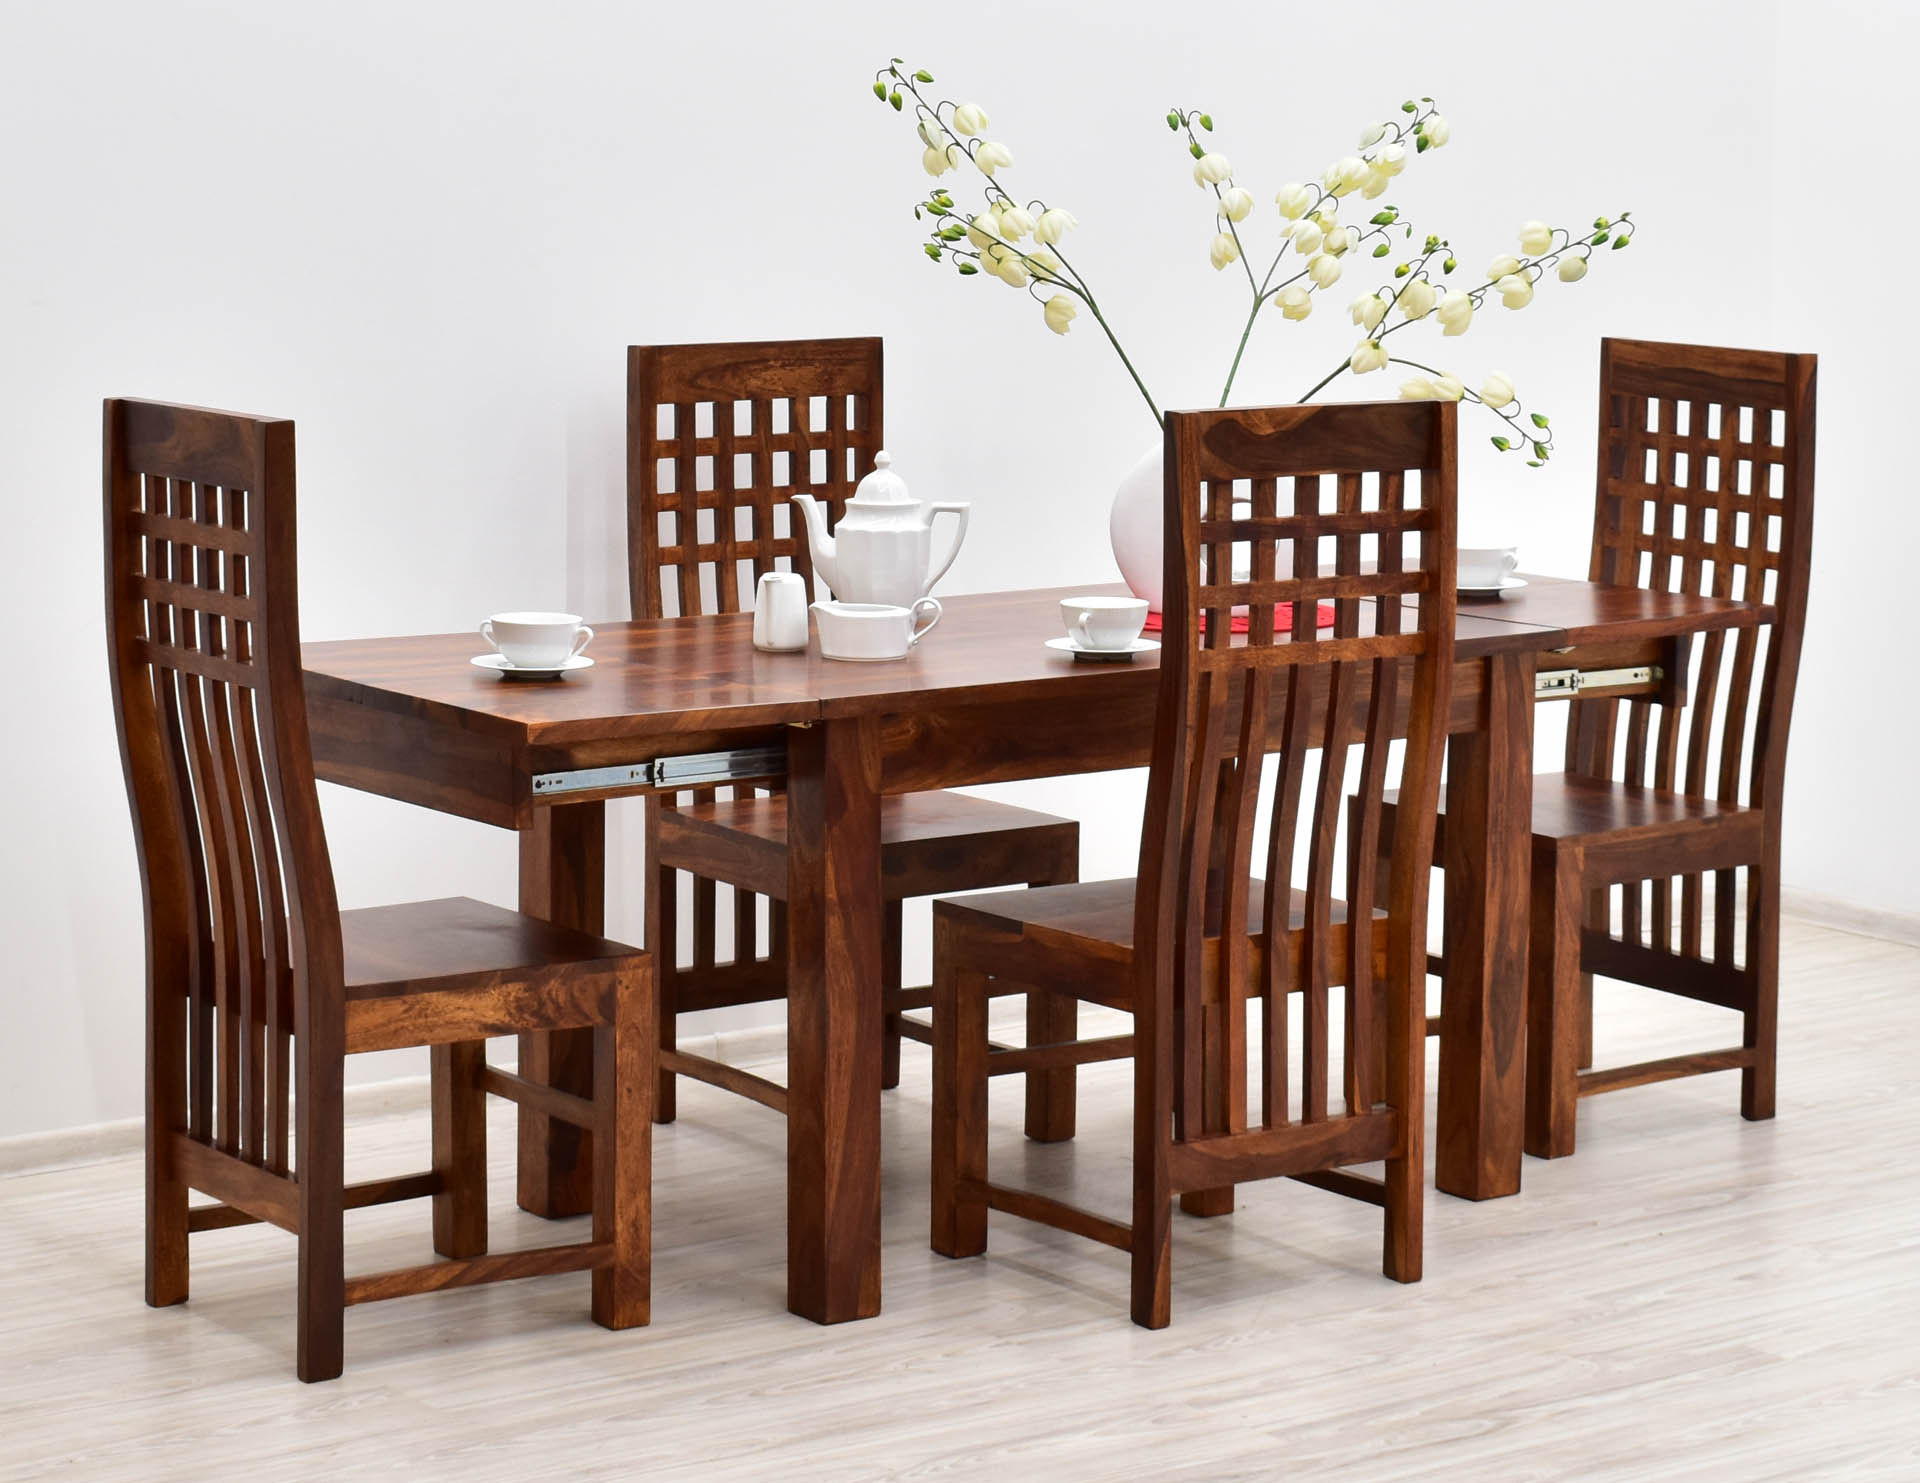 komplet-obiadowy-kolonialny-stol-rozkladany-4-krzesla-azurowe-oparcia-lite-drewno-palisander-miodowy-braz